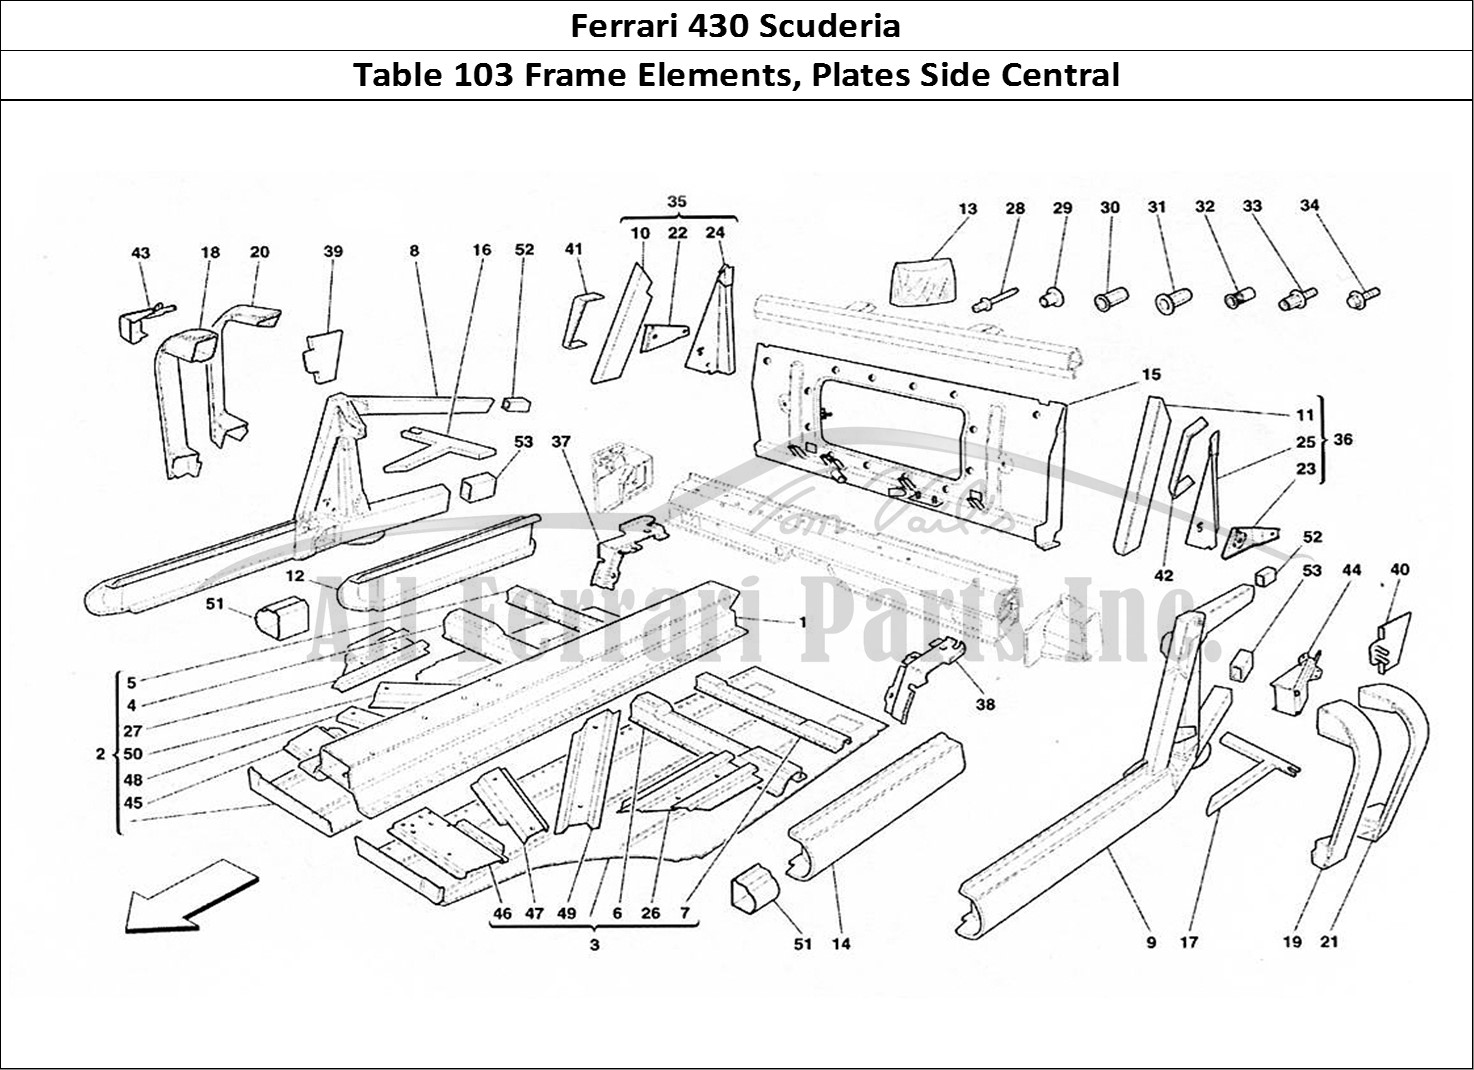 Ferrari Parts Ferrari 430 Scuderia Page 103 Central Side Elements and